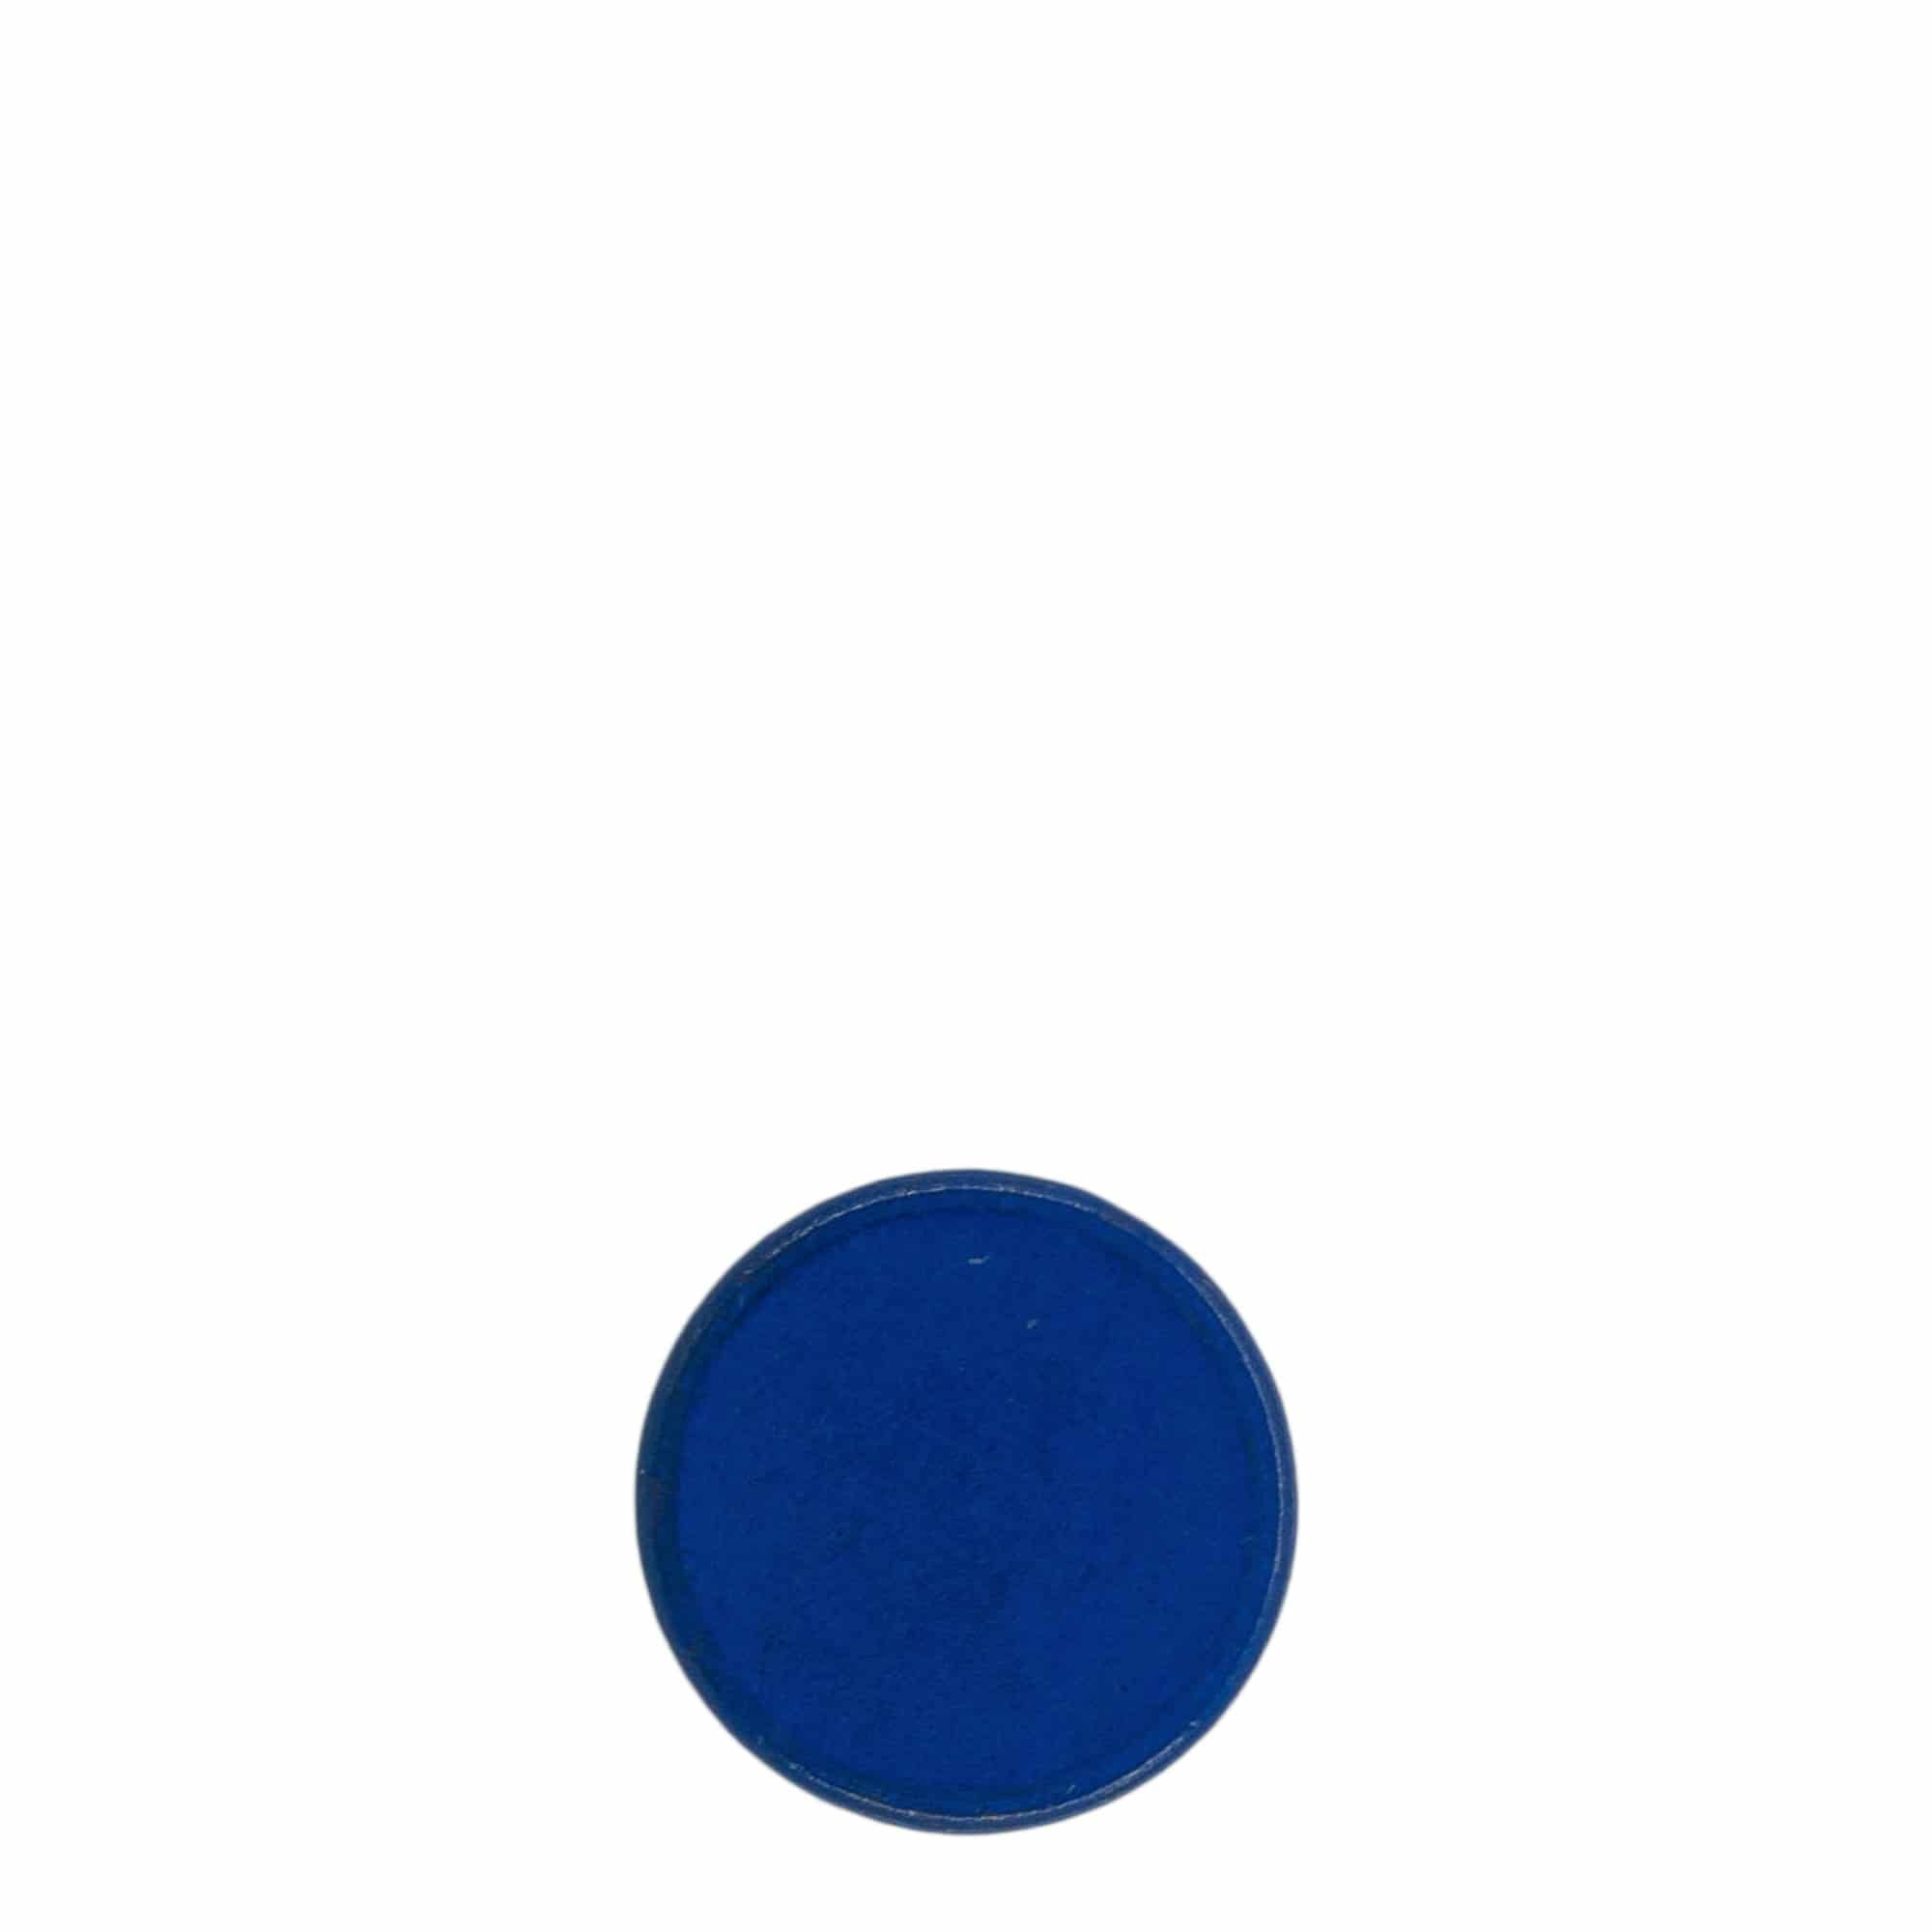 Korek s úchytem 19 mm, dřevo, modrý, pro uzávěr: korek